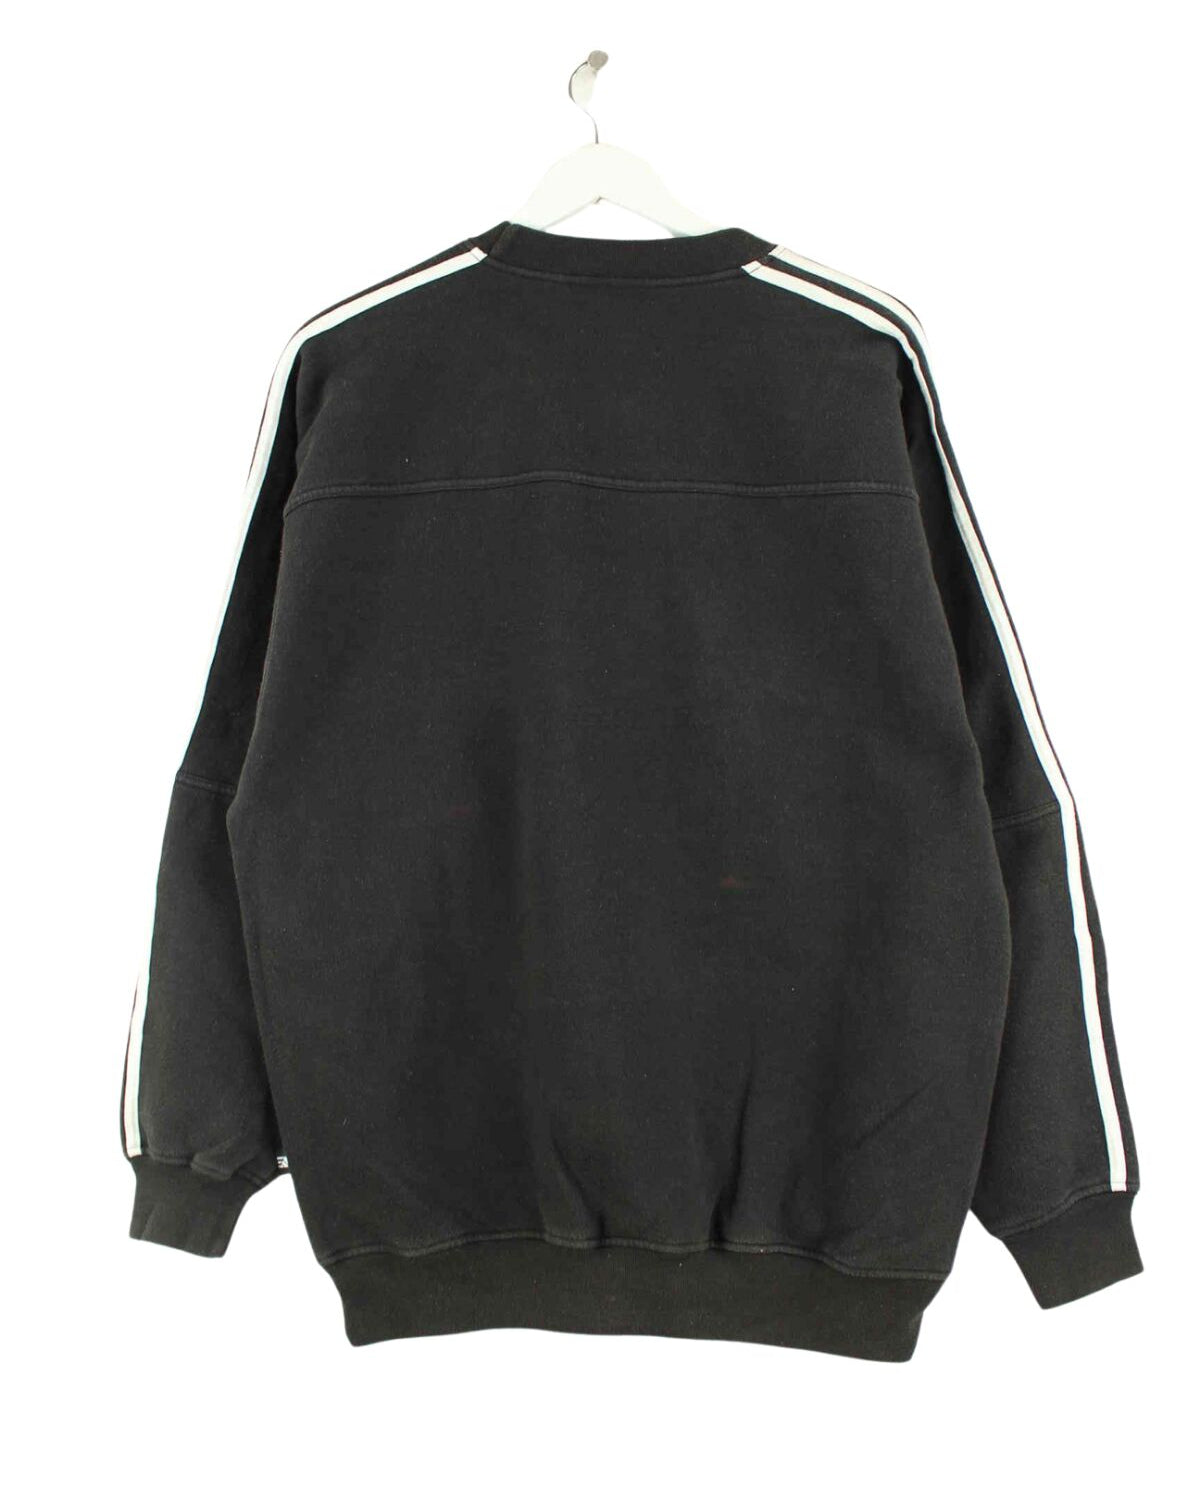 Adidas 90s Vintage 3-Stripes Sweater Schwarz L (back image)